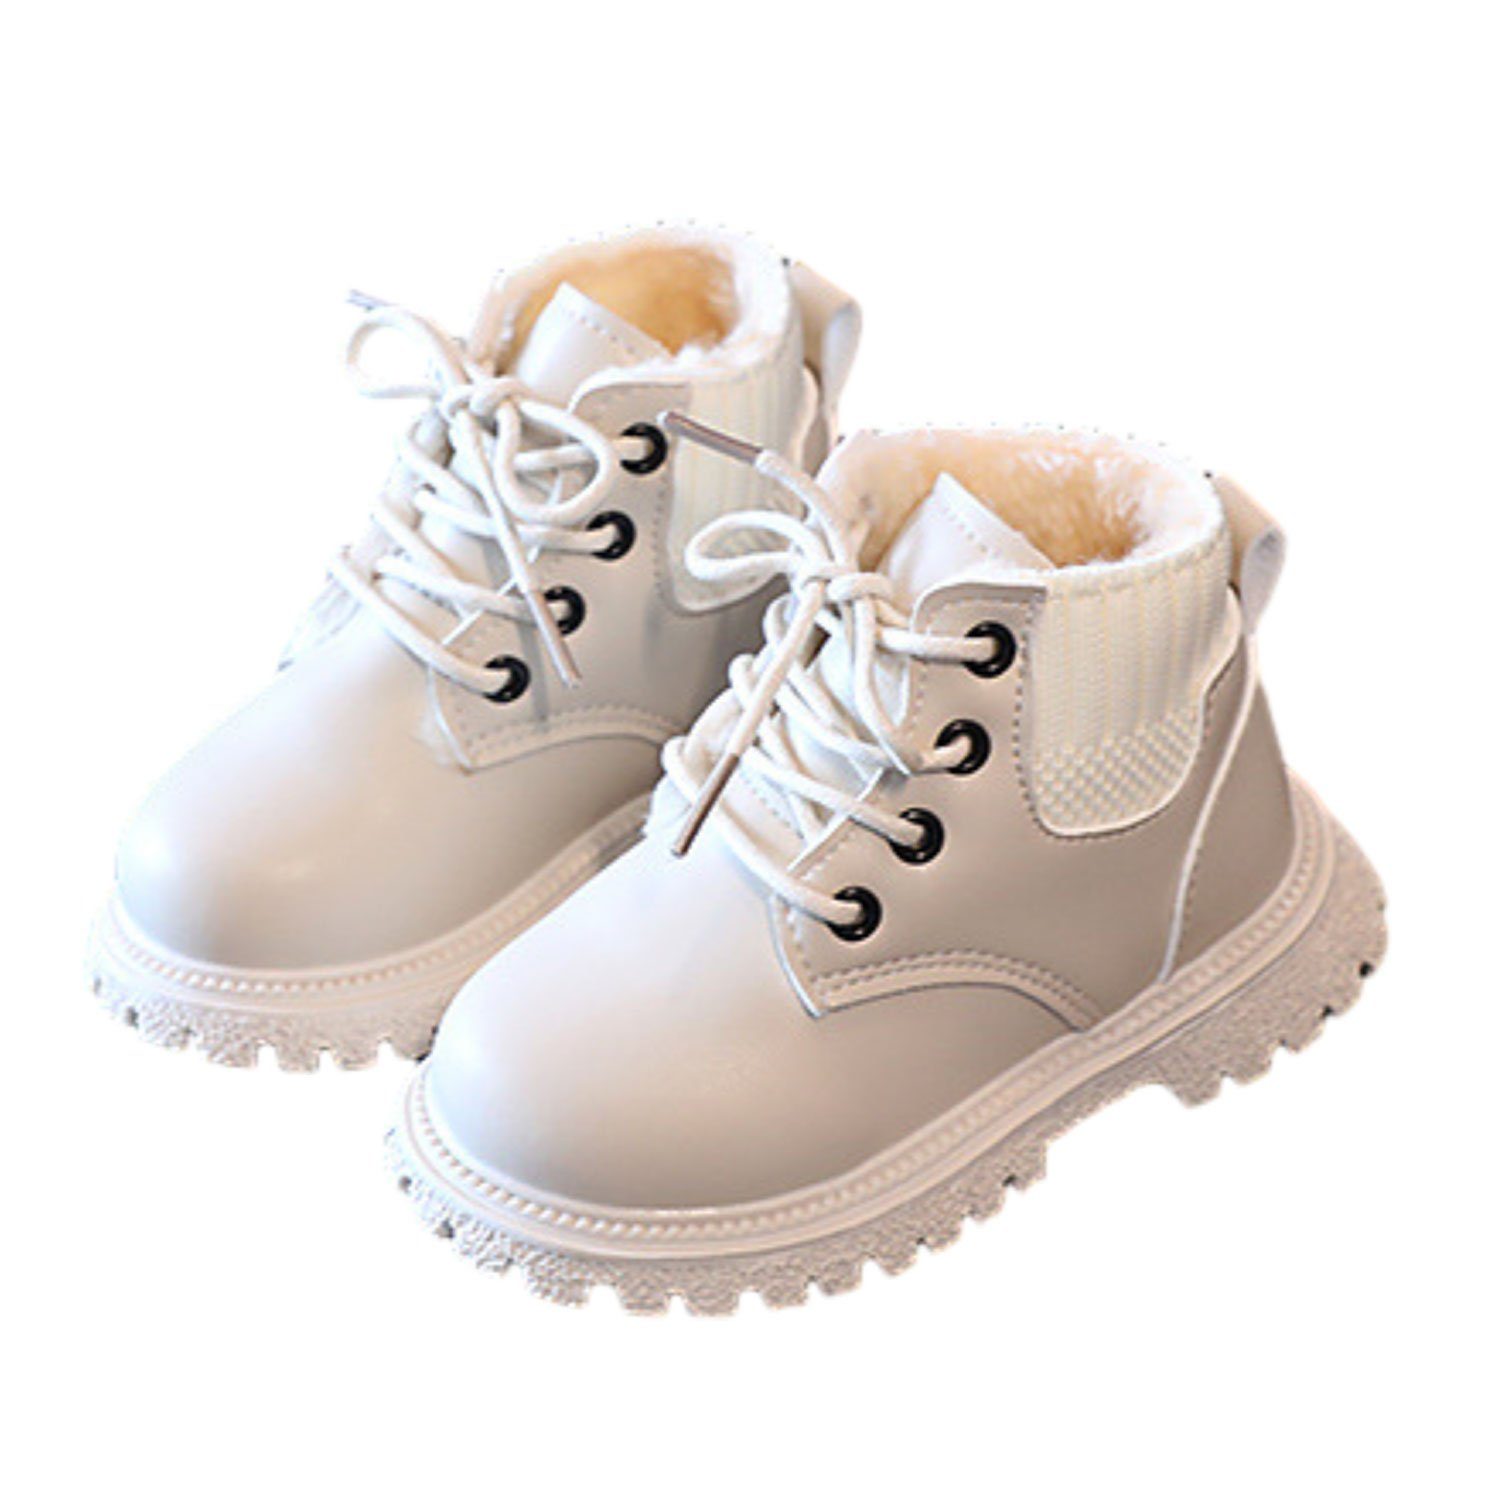 Daisred Kinder Stiefelette Mädchen Stiefeletten Winter Boots Stiefel Weiß